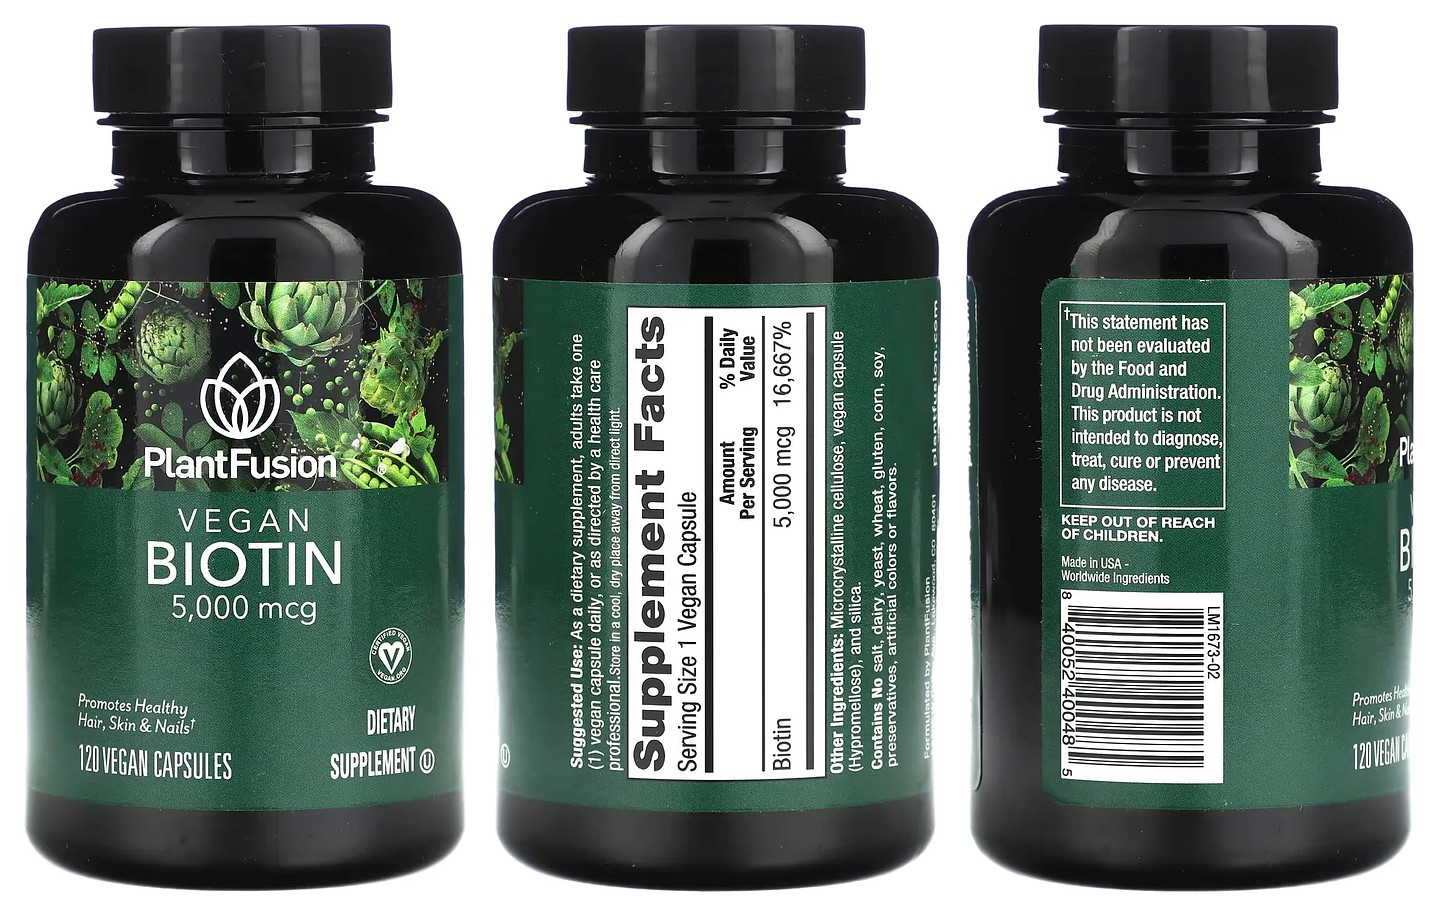 PlantFusion, Vegan Biotin packaging